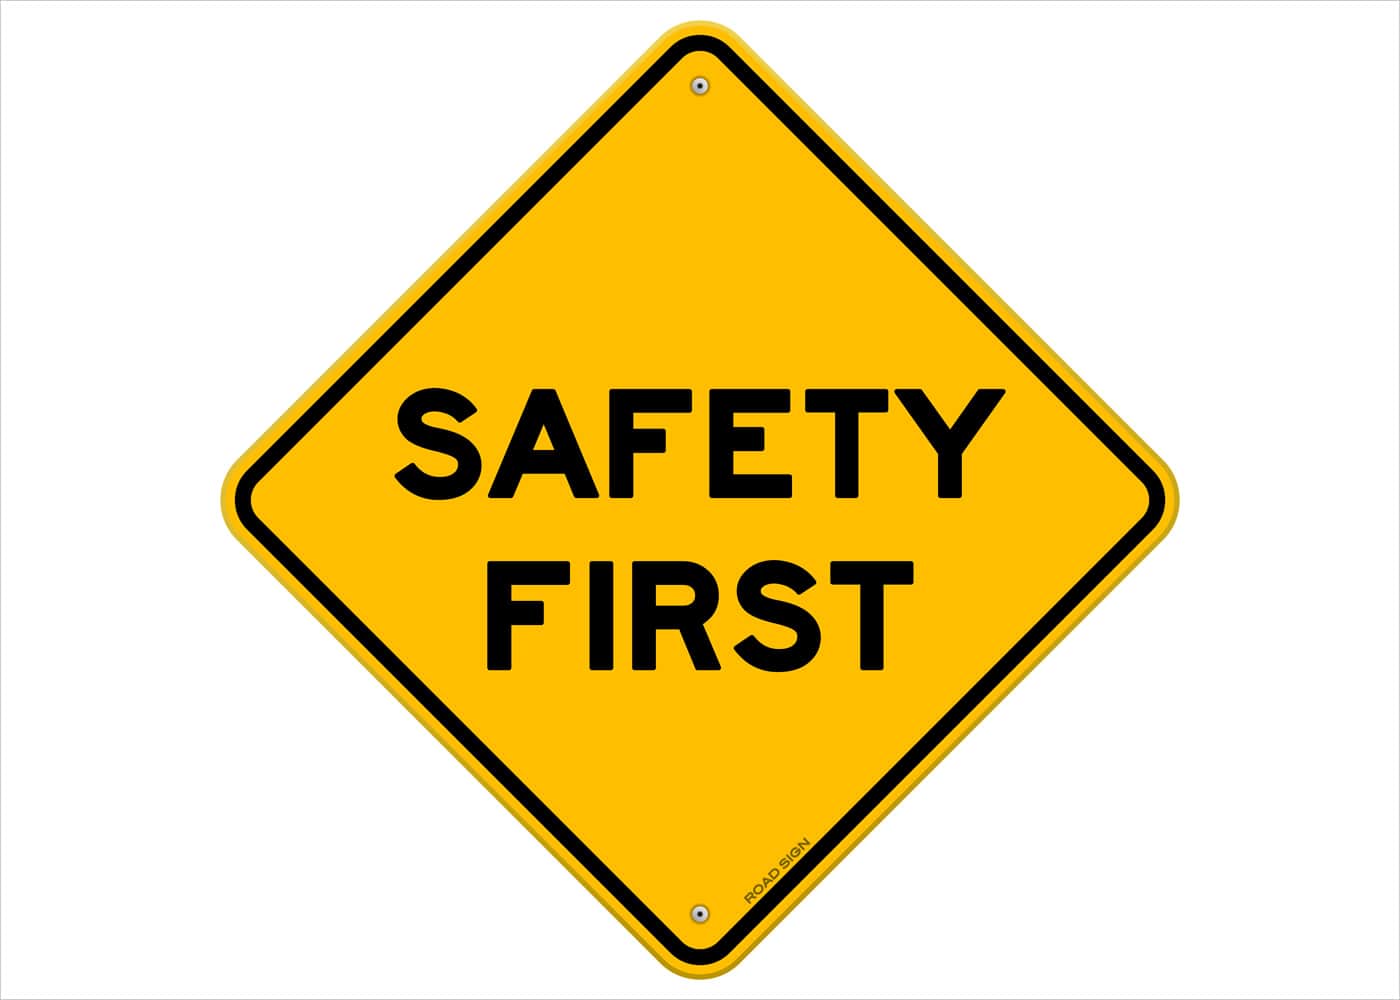 naem-webinar-2015-safety-culture-re-invigoration-700x500